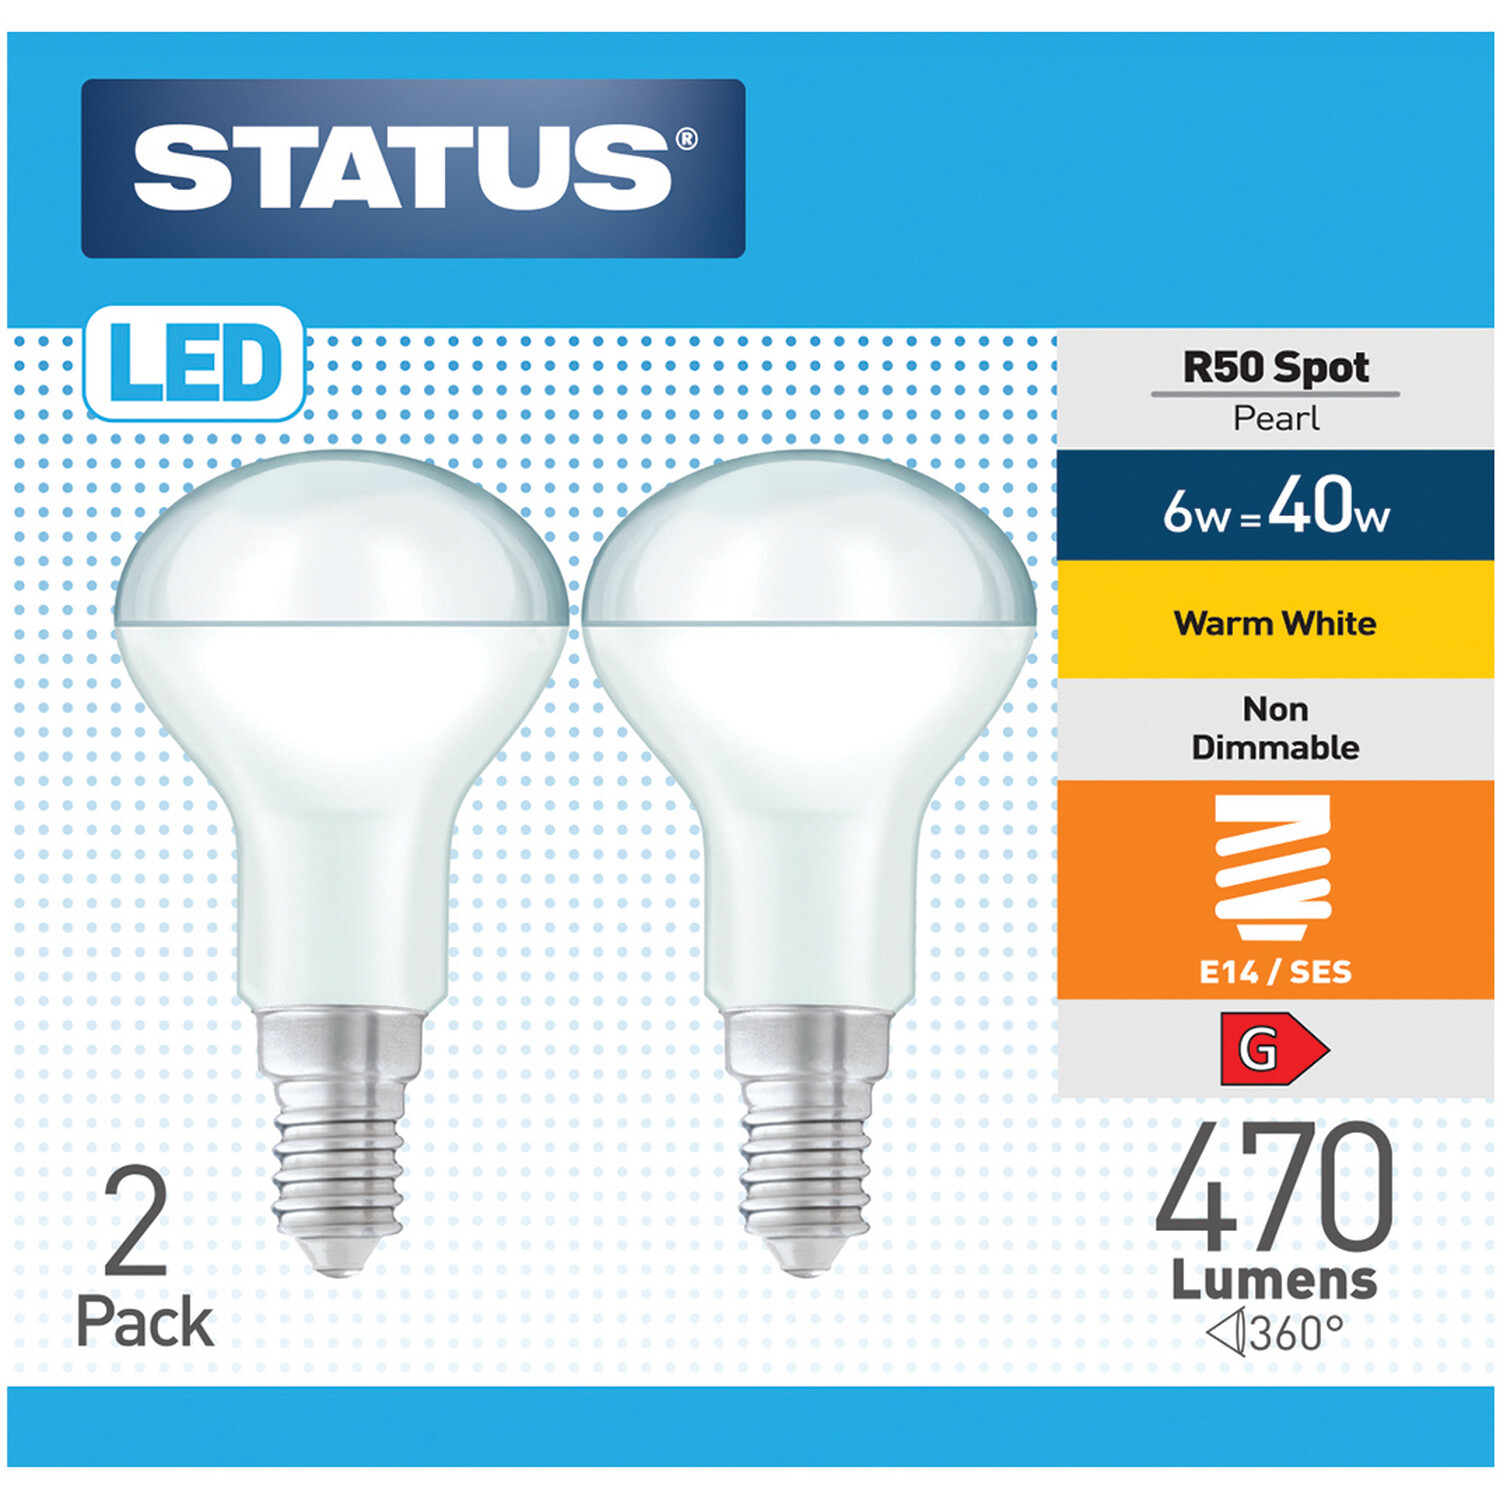 Pack of 2 Status LED R50 Spot Pearl Lightbulbs Image 1